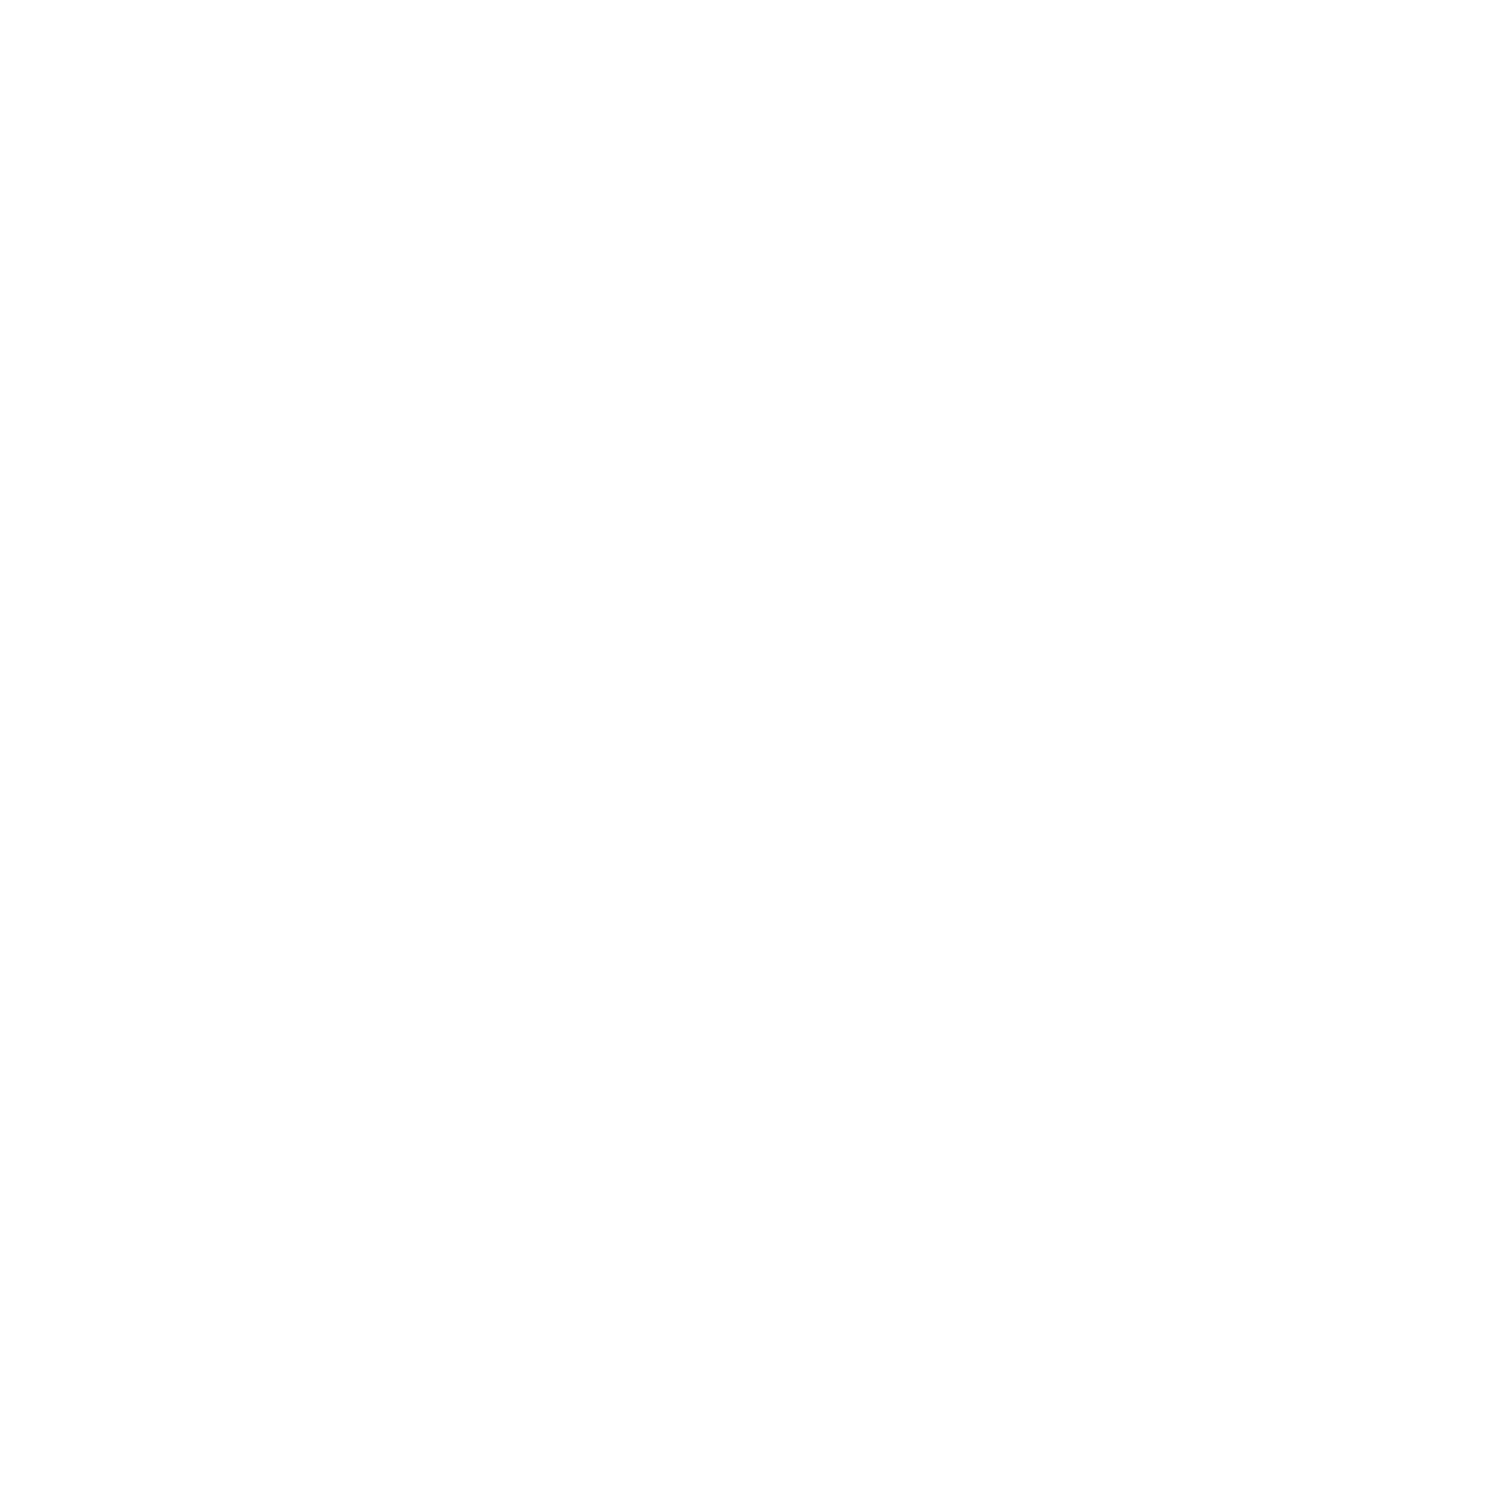 The Track Closet